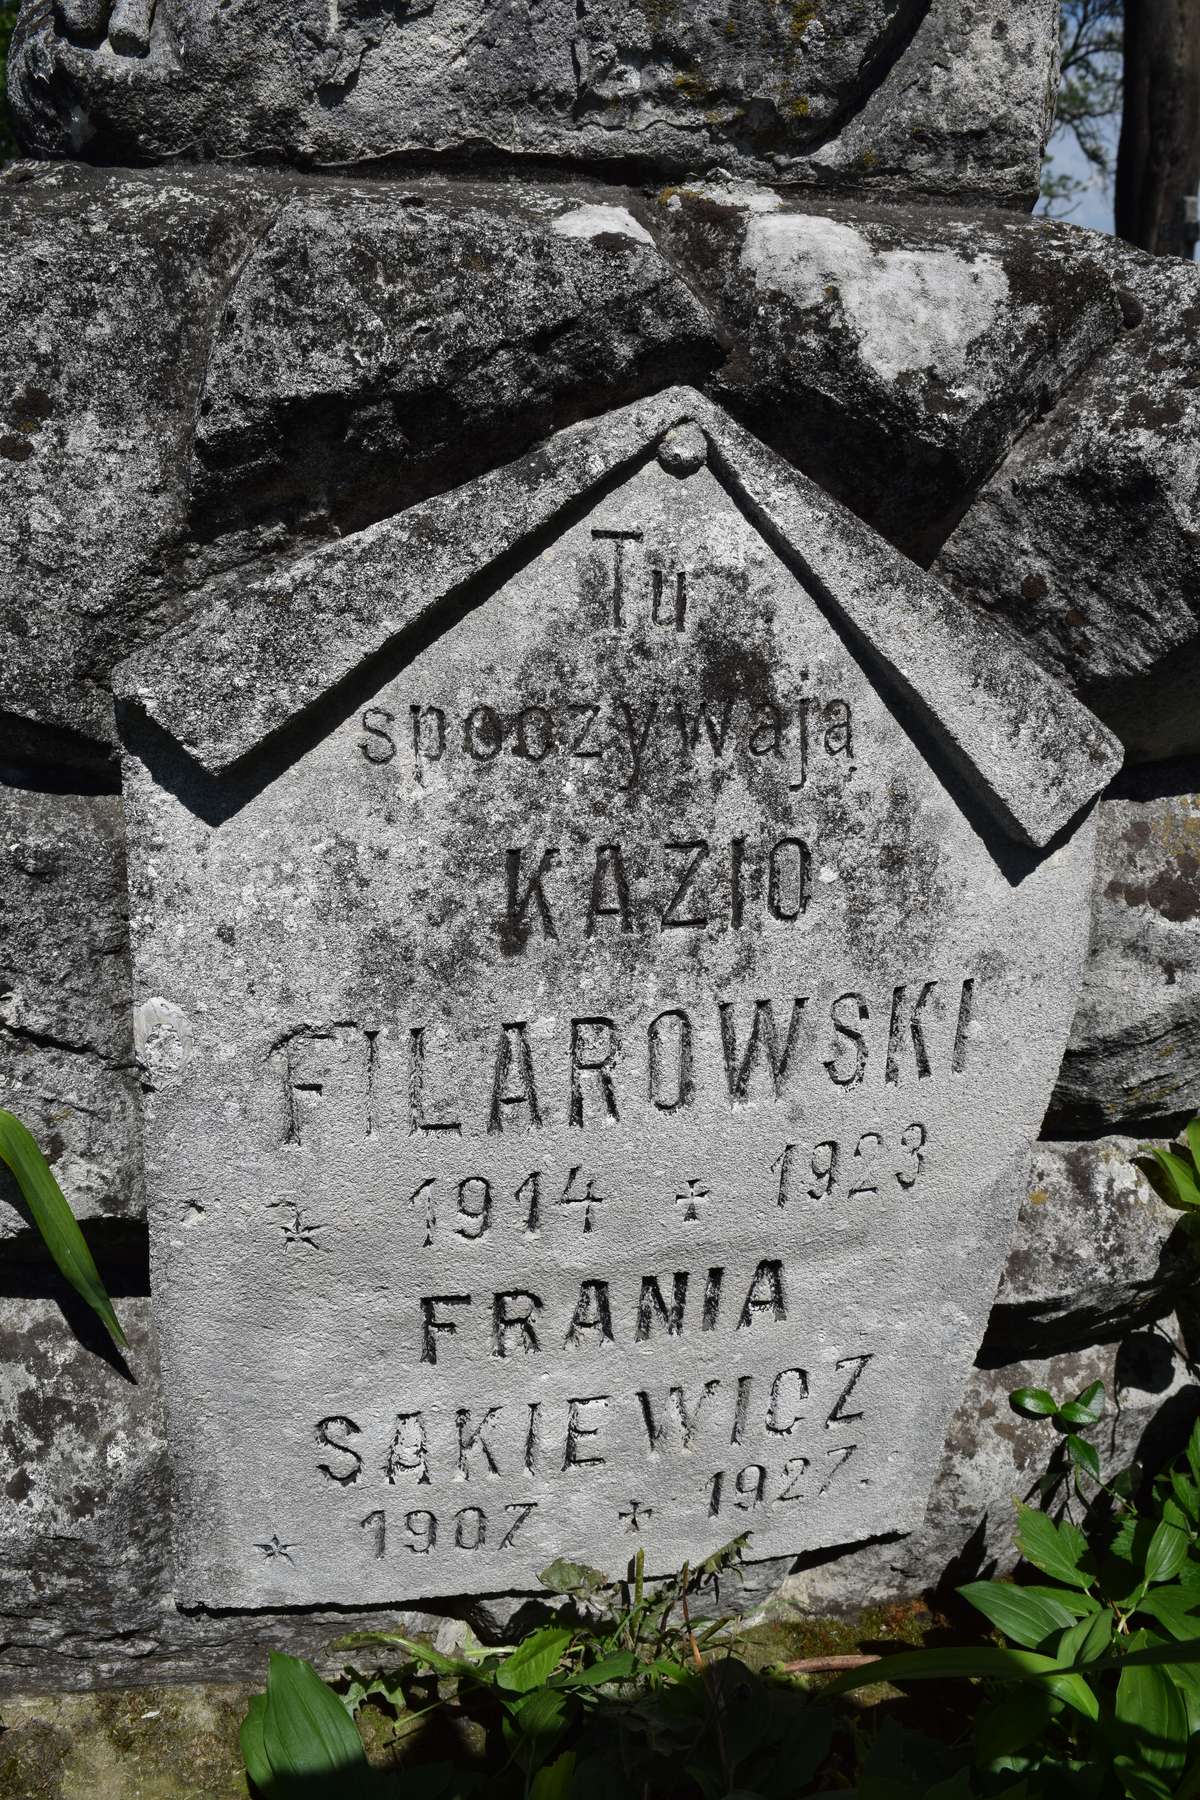 Fragment of the tombstone of Kazimierz Filarowski and Franciszka Sakiewicz, Zbarazh cemetery, as of 2018